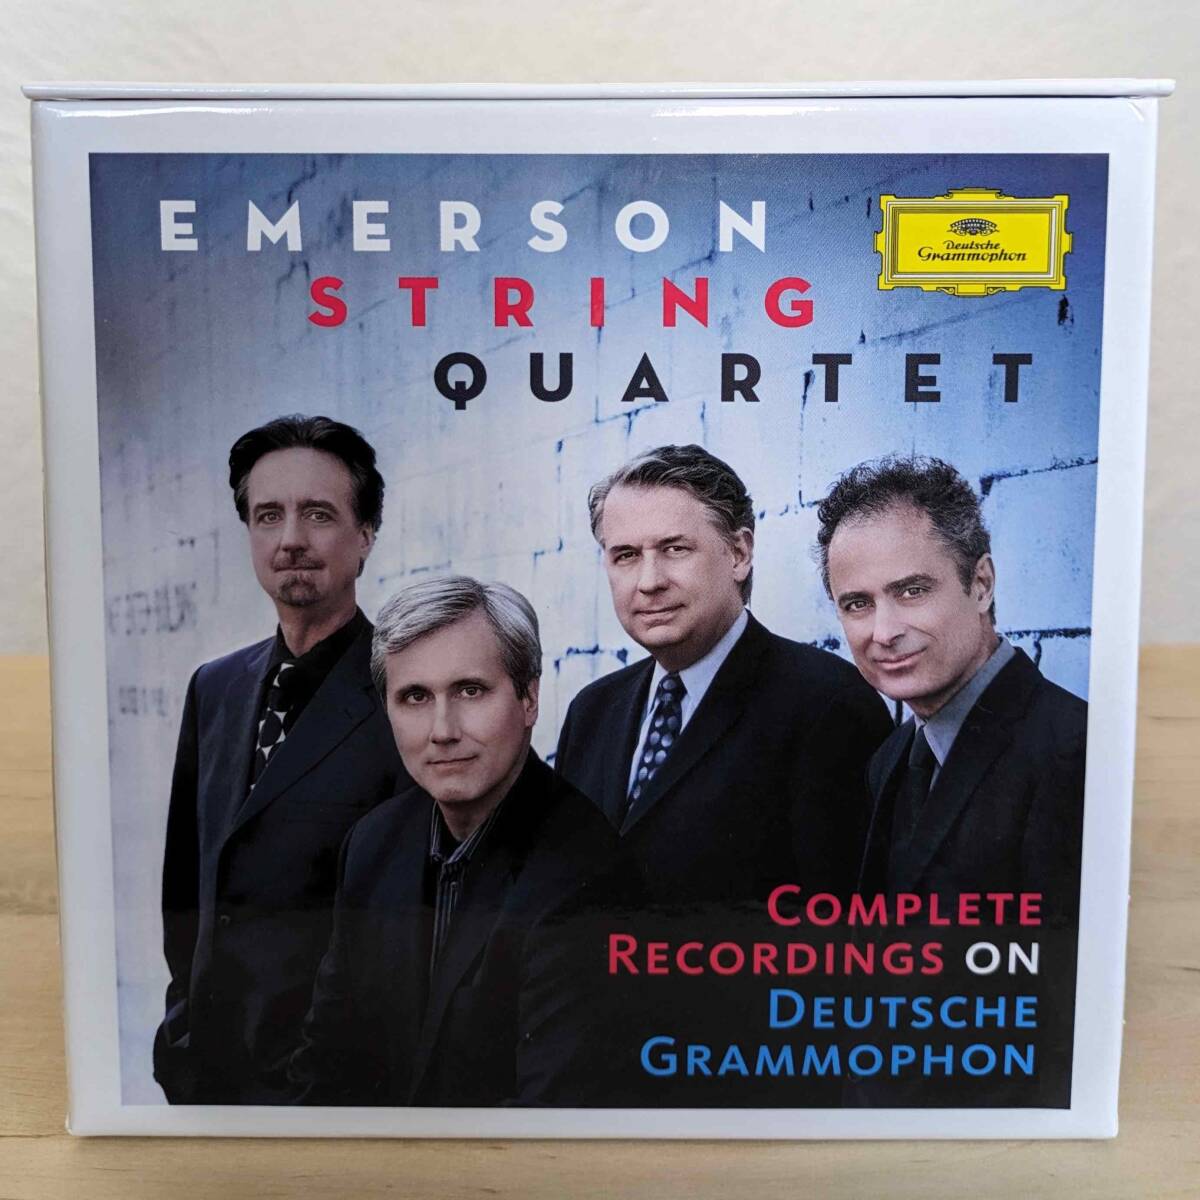 エマーソン弦楽四重奏団DG録音全集(51CD+ボーナスCD)/Emerson String Quartet Complete Recordings On Deutsche Grammophon 52CD-BOX_画像3